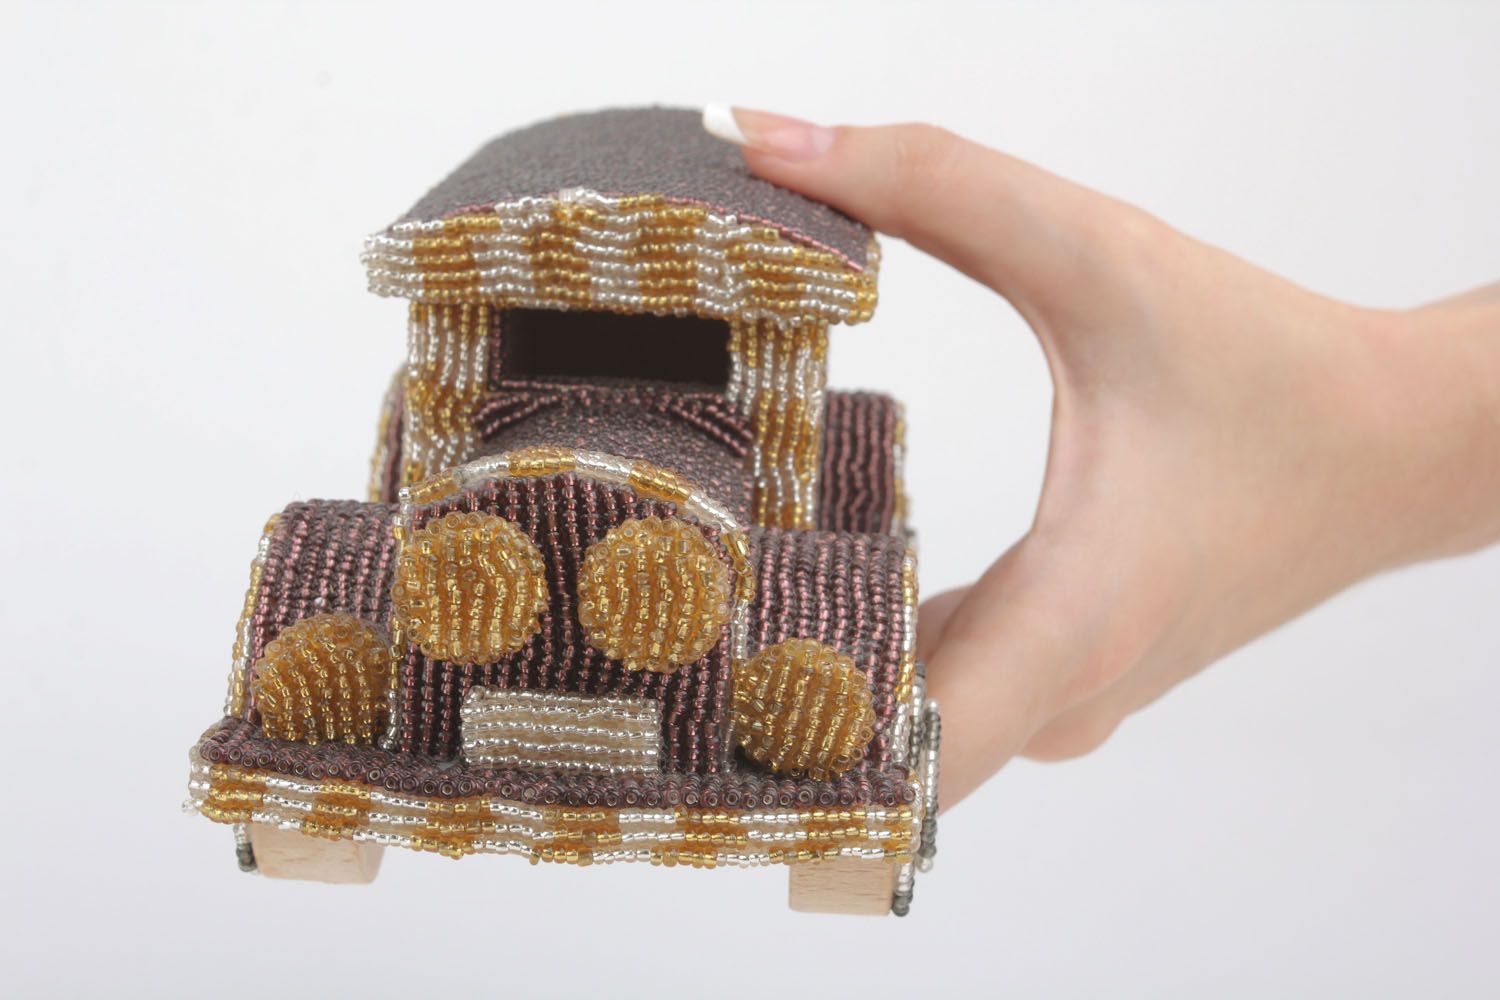 Macchina fatta a mano giocattolo di legno materiale ecologico con perline foto 5